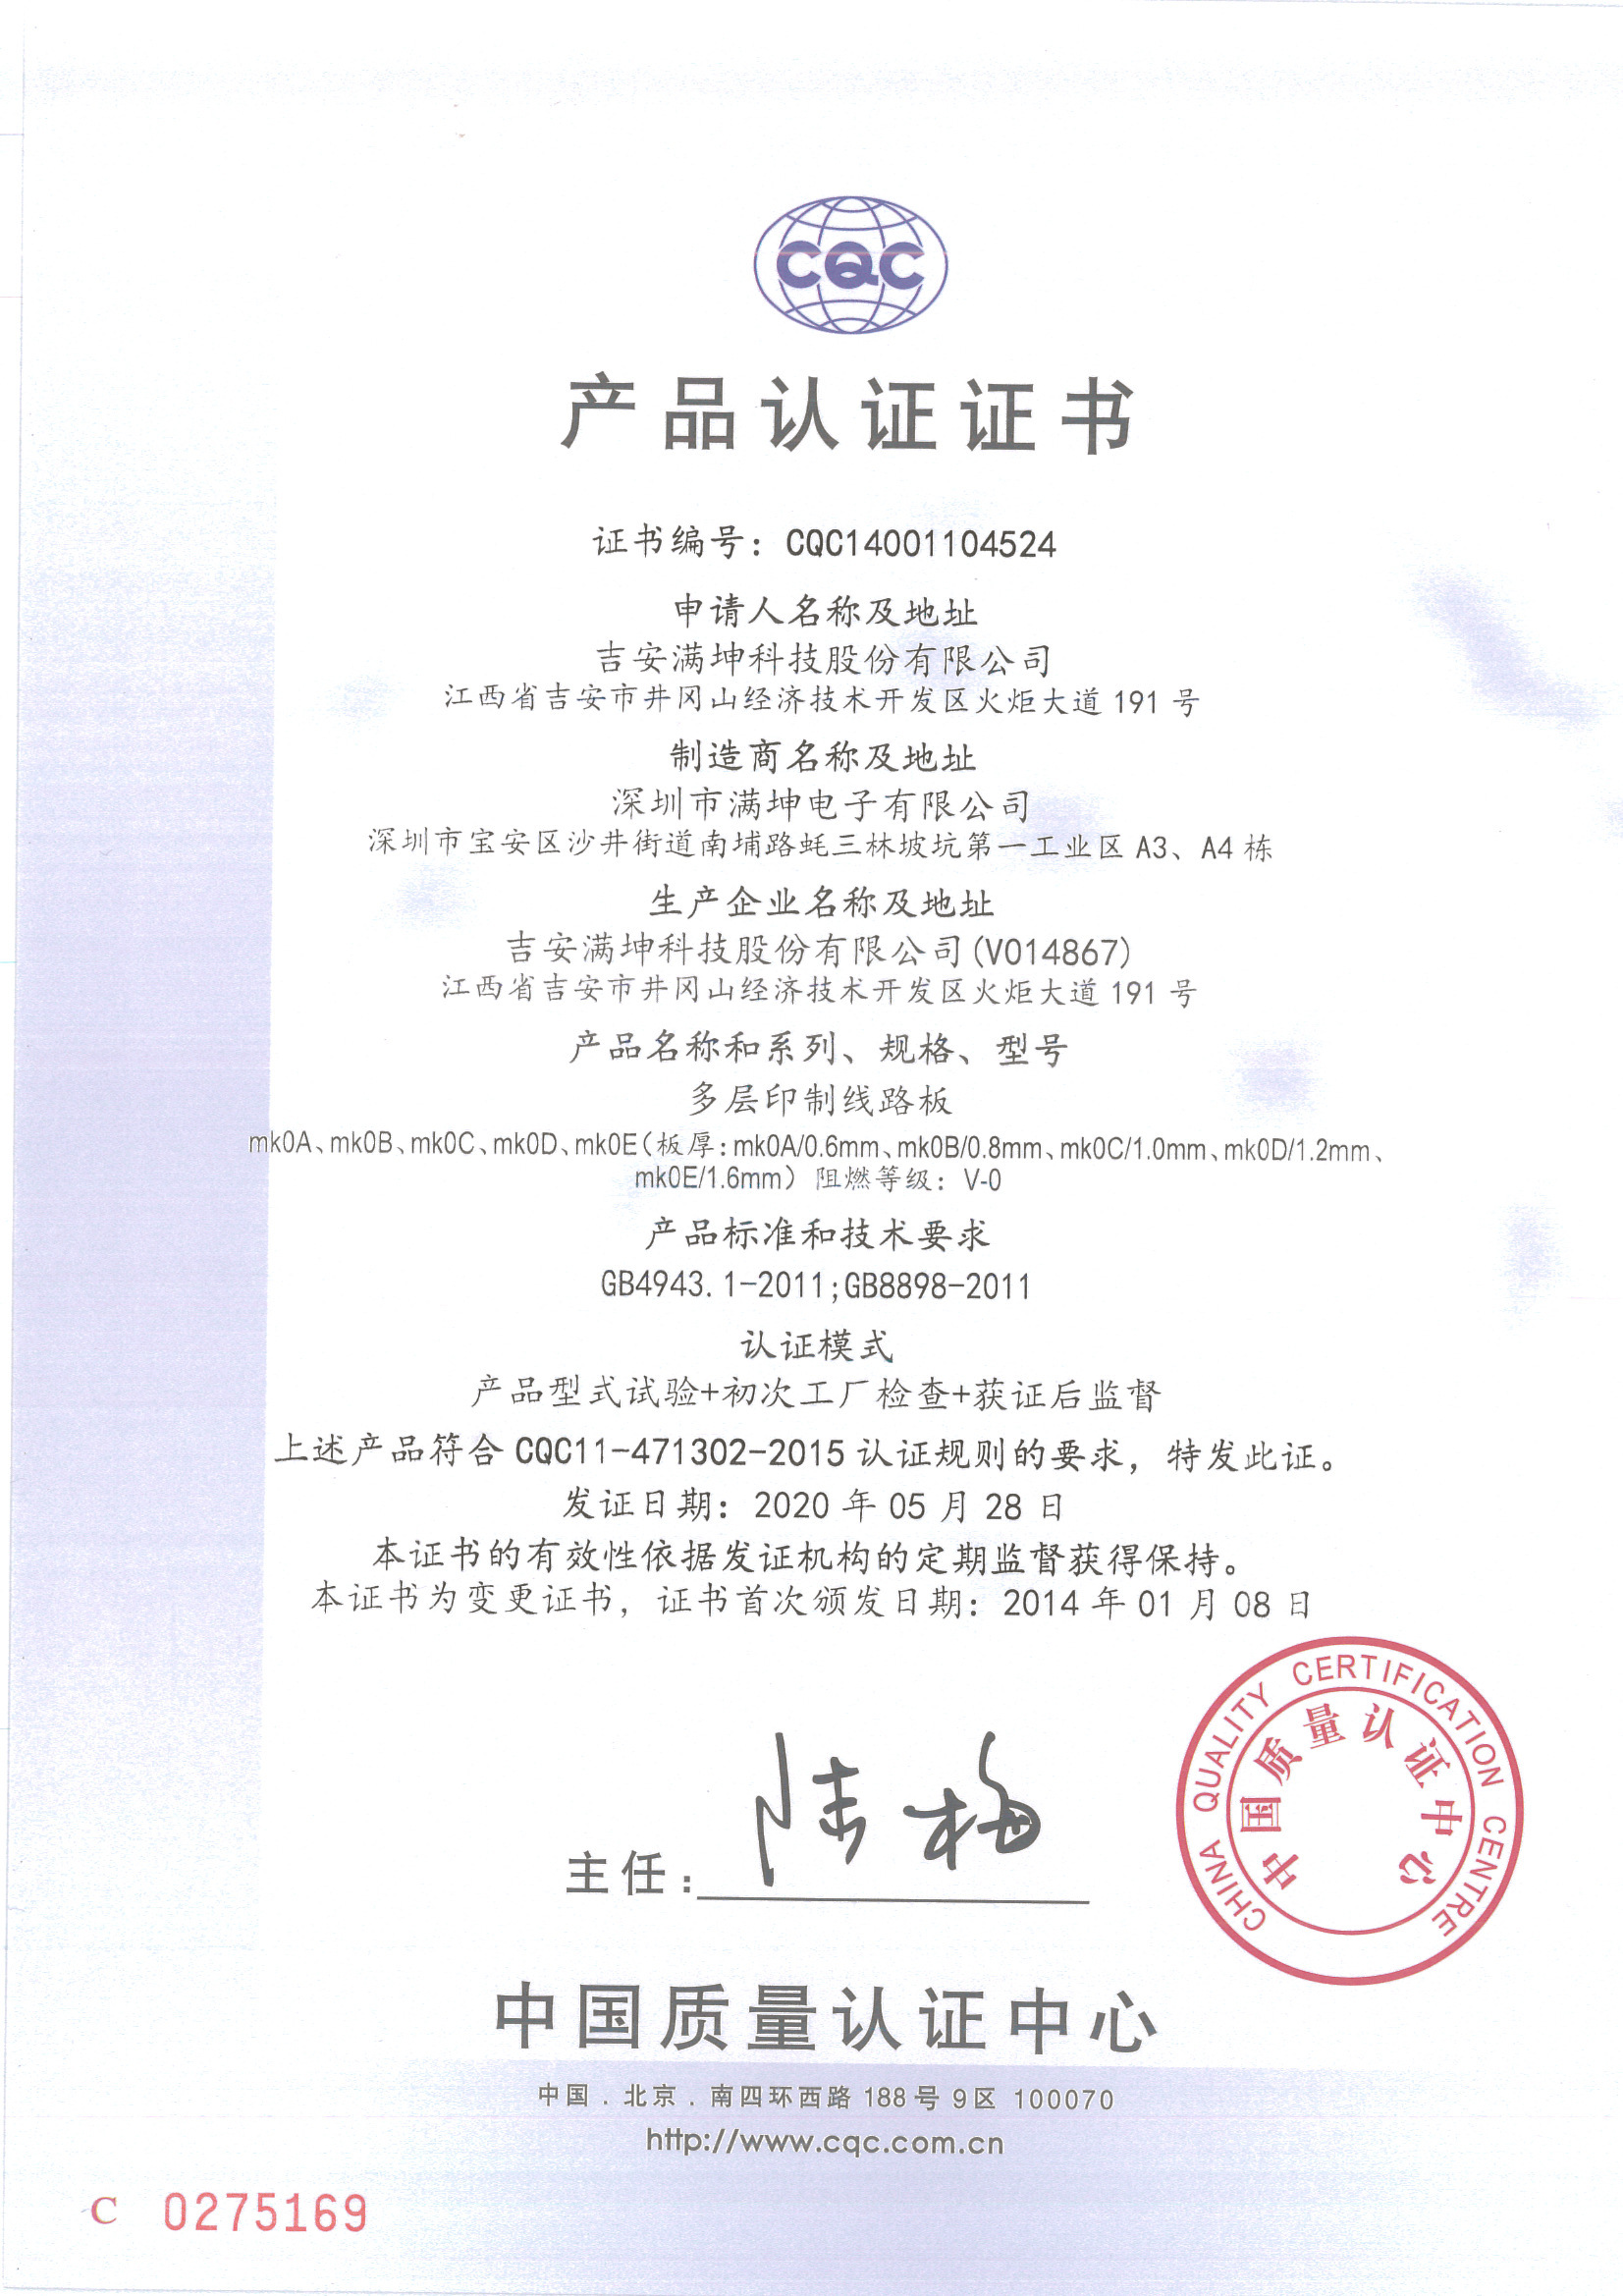 Multilayer board CQC certificate: 2015